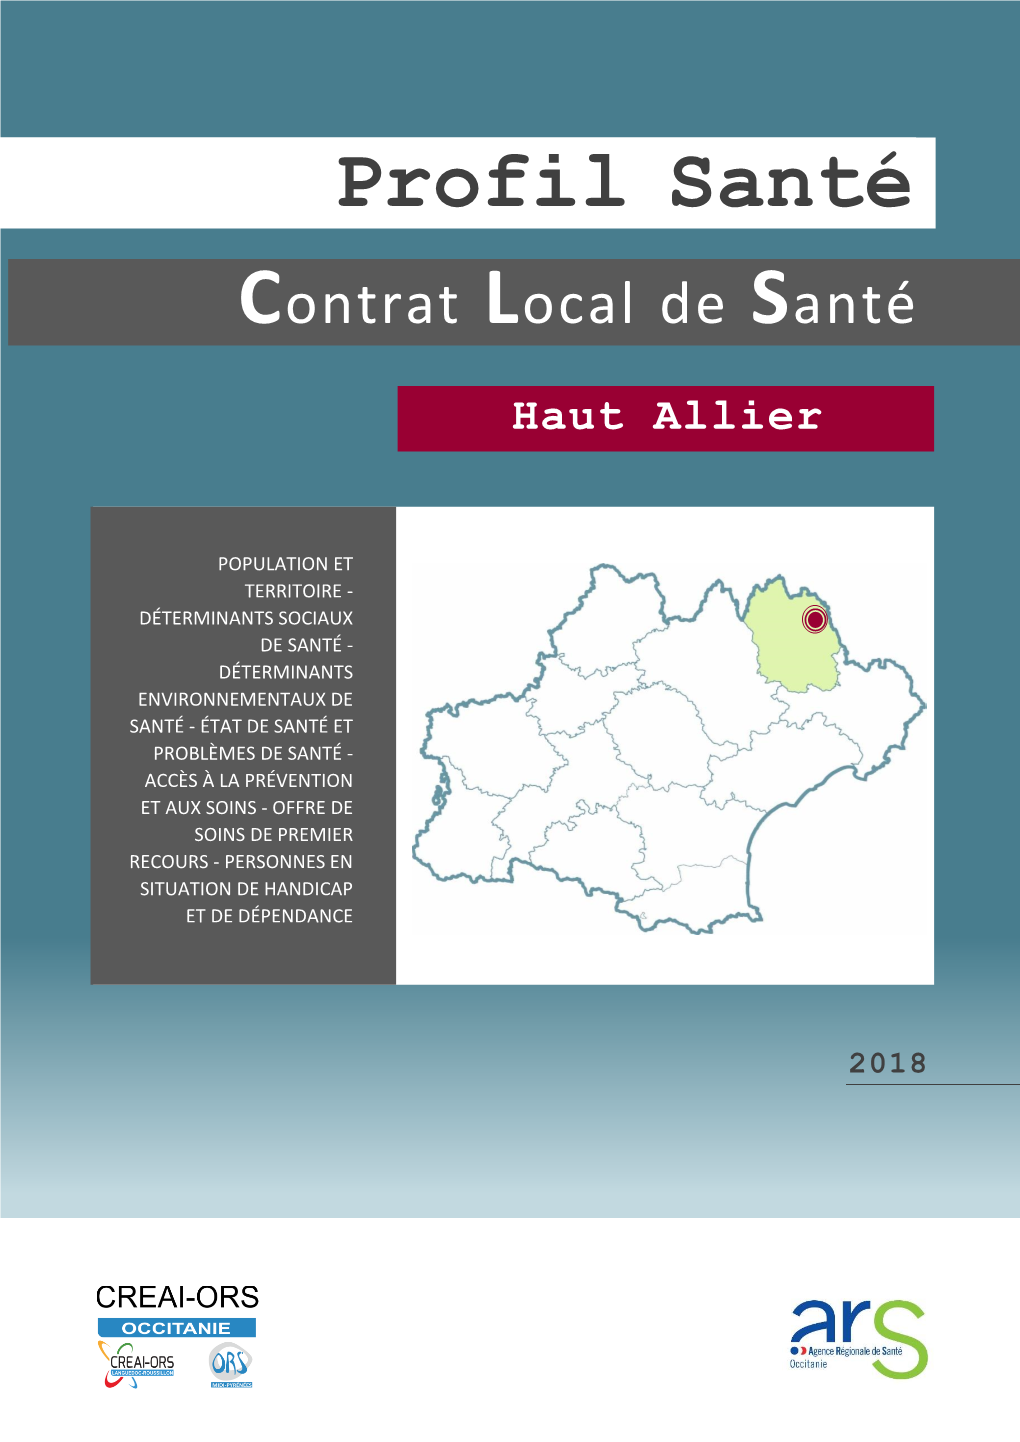 Profil Santé Haut Allier